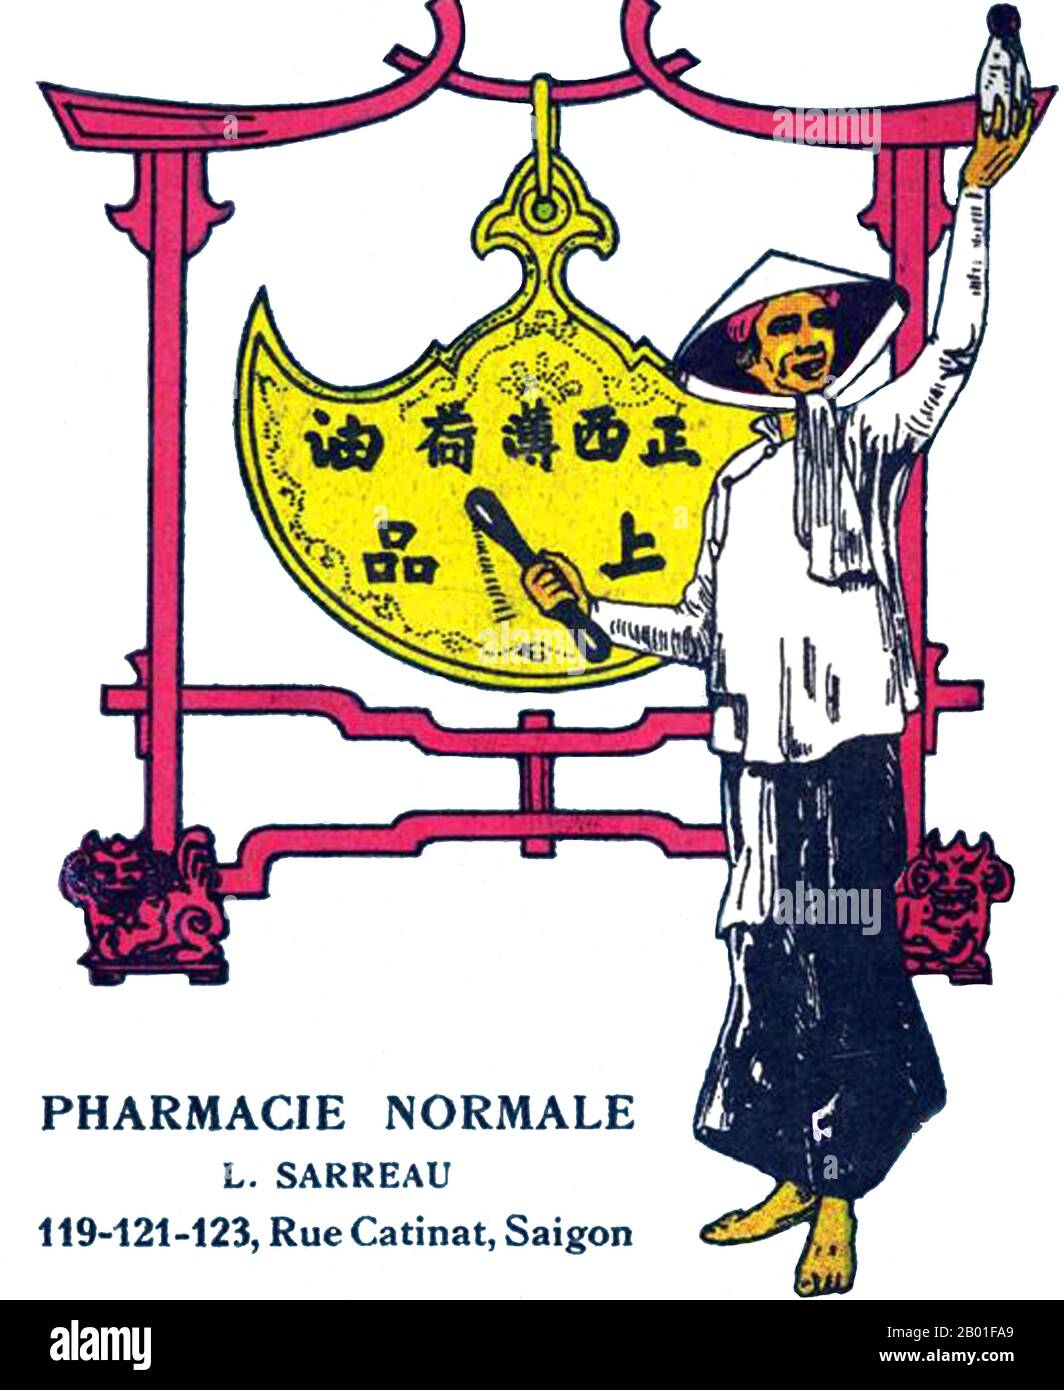 Vietnam: Anuncio de la Farmacia L. Sarreau, Saigón c. 1940s. Anuncio de L. Sarreau Pharmacie Normale, Rue Catinat, Saigón, de la época colonial francesa en Indochina. Foto de stock